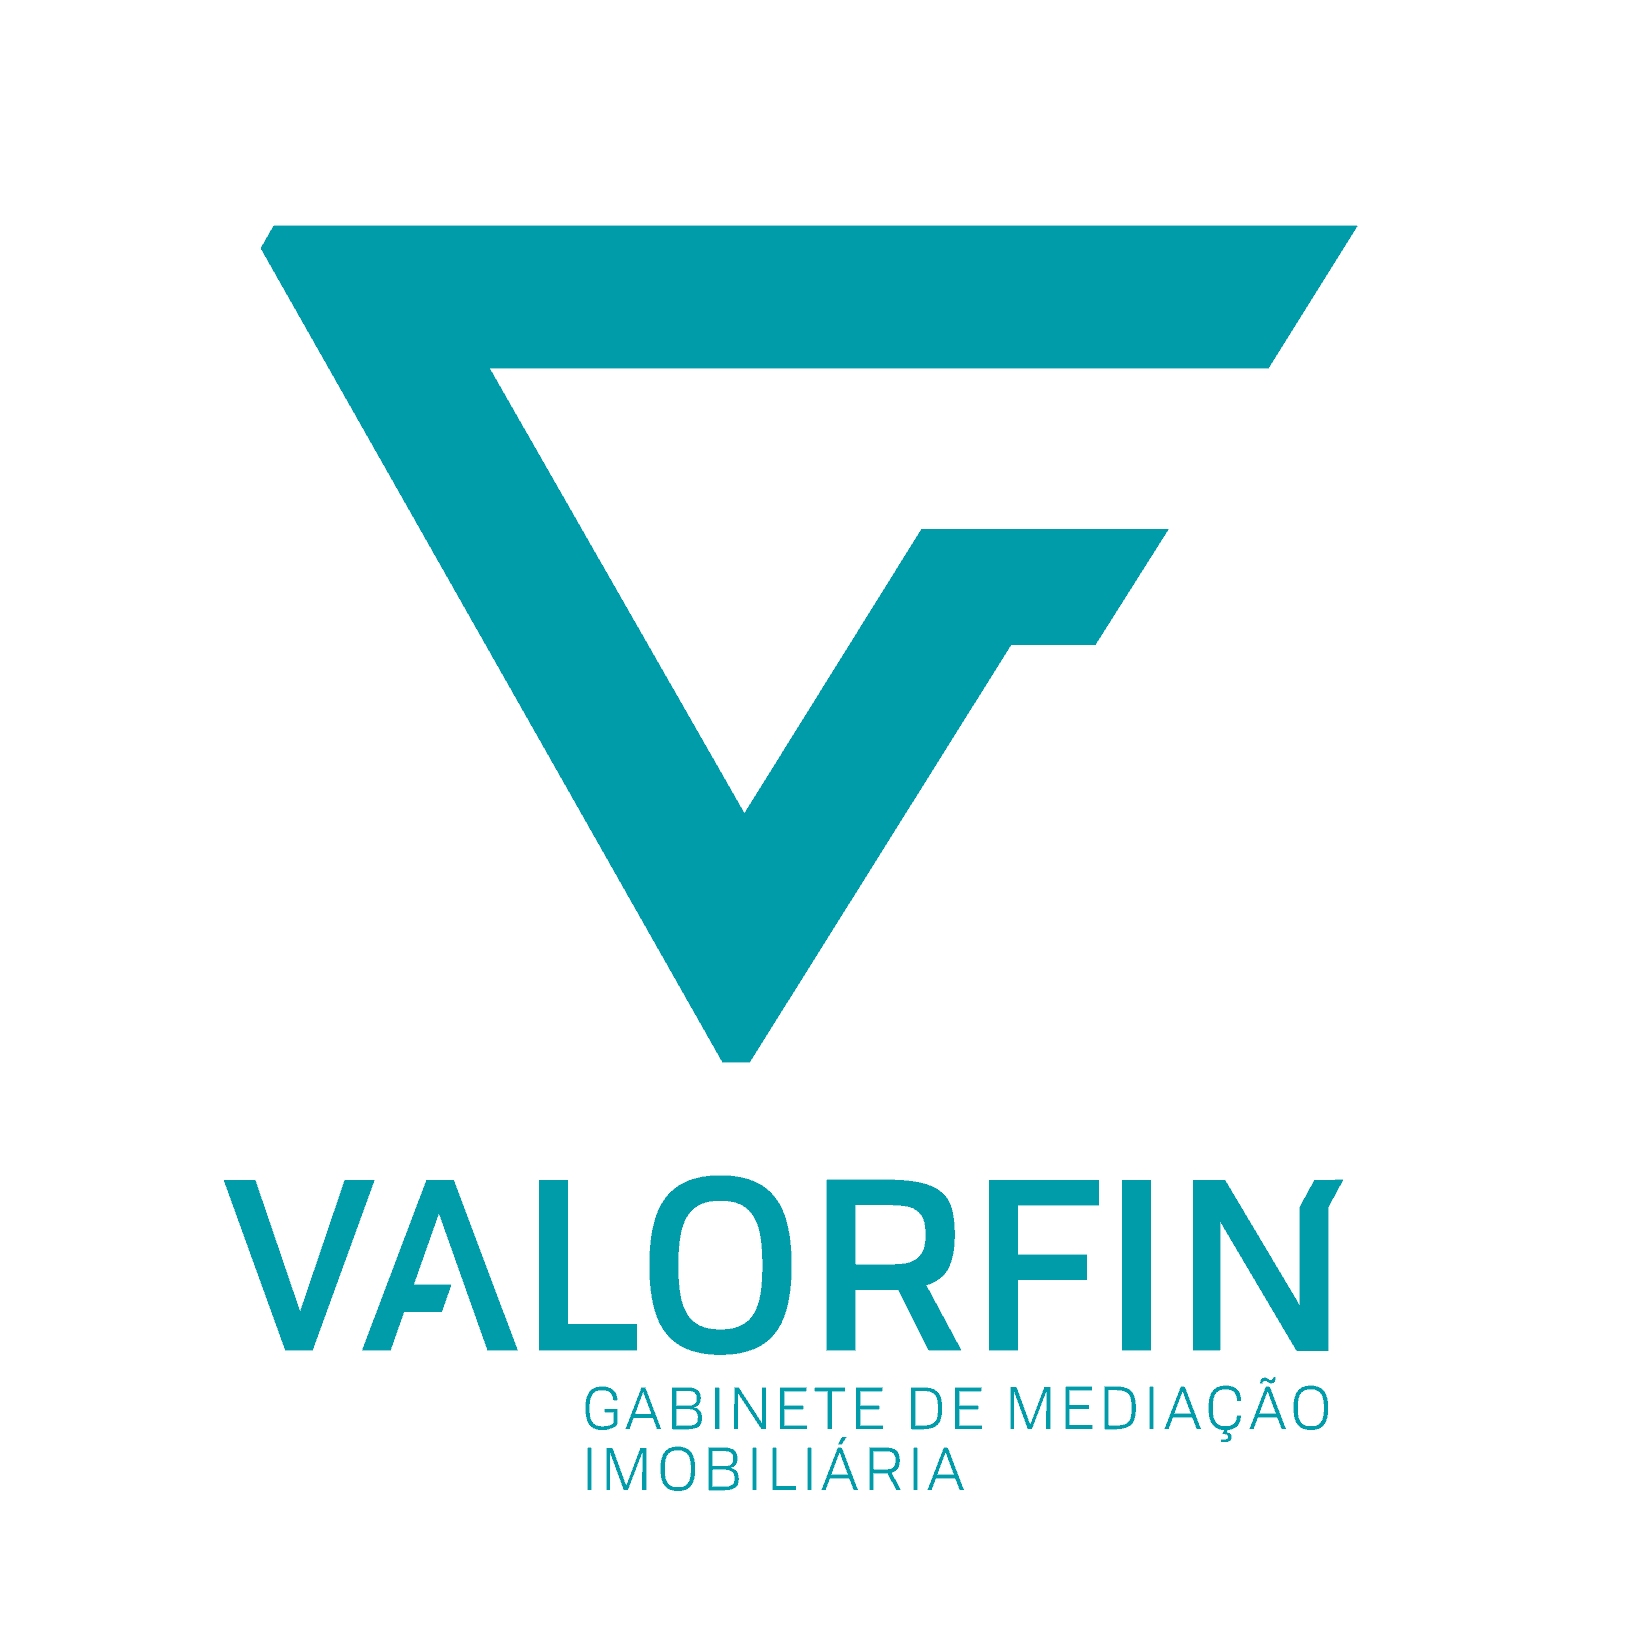 VALORFIN - Gab. de Med. Imob.